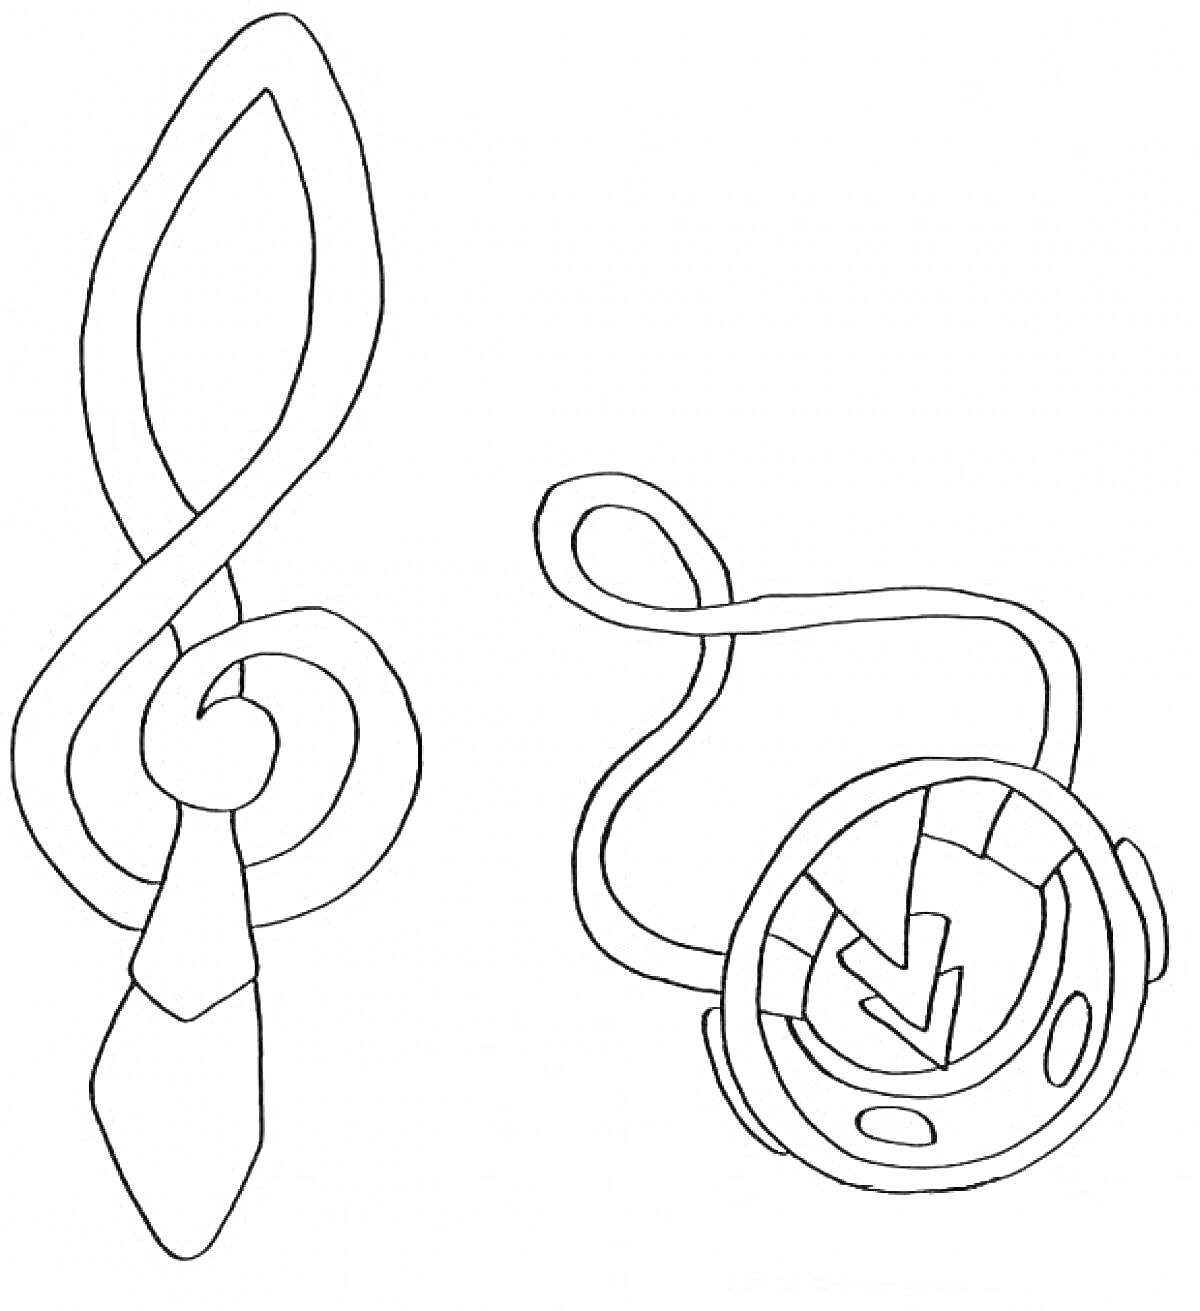 Волшебные артефакты Винкс в форме символов и знаков